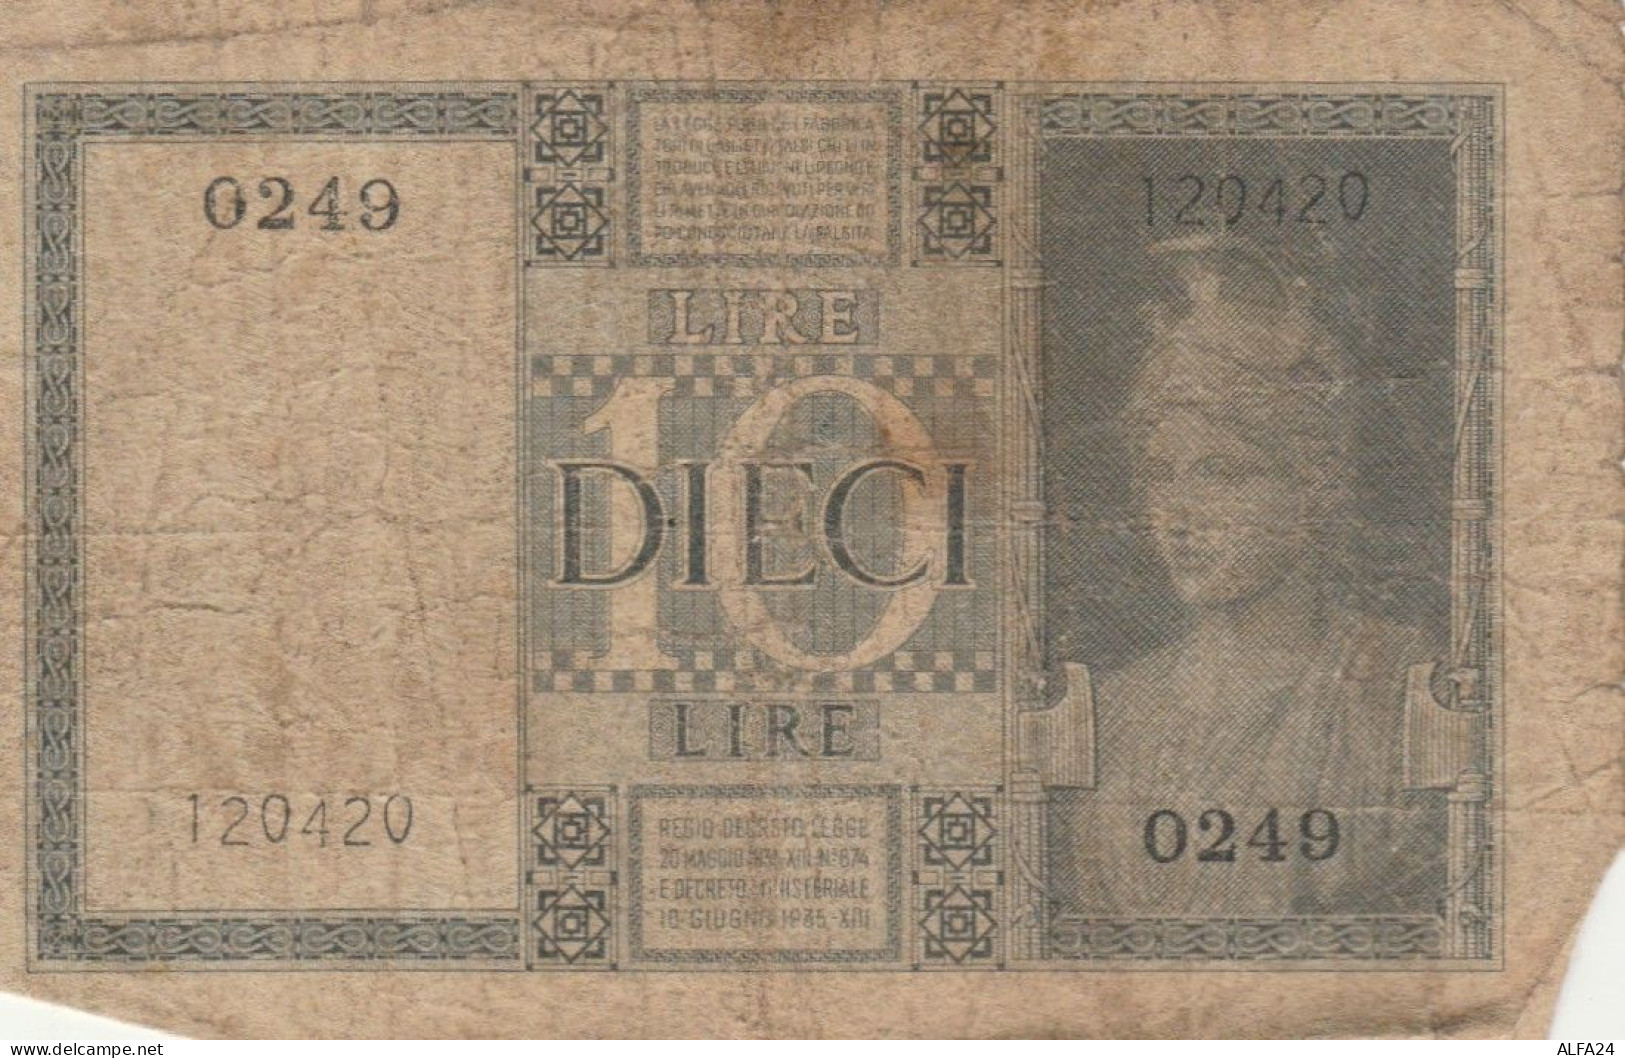 BANCONOTA ITALIA LIRE 10 1939 BIGLIETTO DI STATO VF (VS517 - Regno D'Italia – 10 Lire